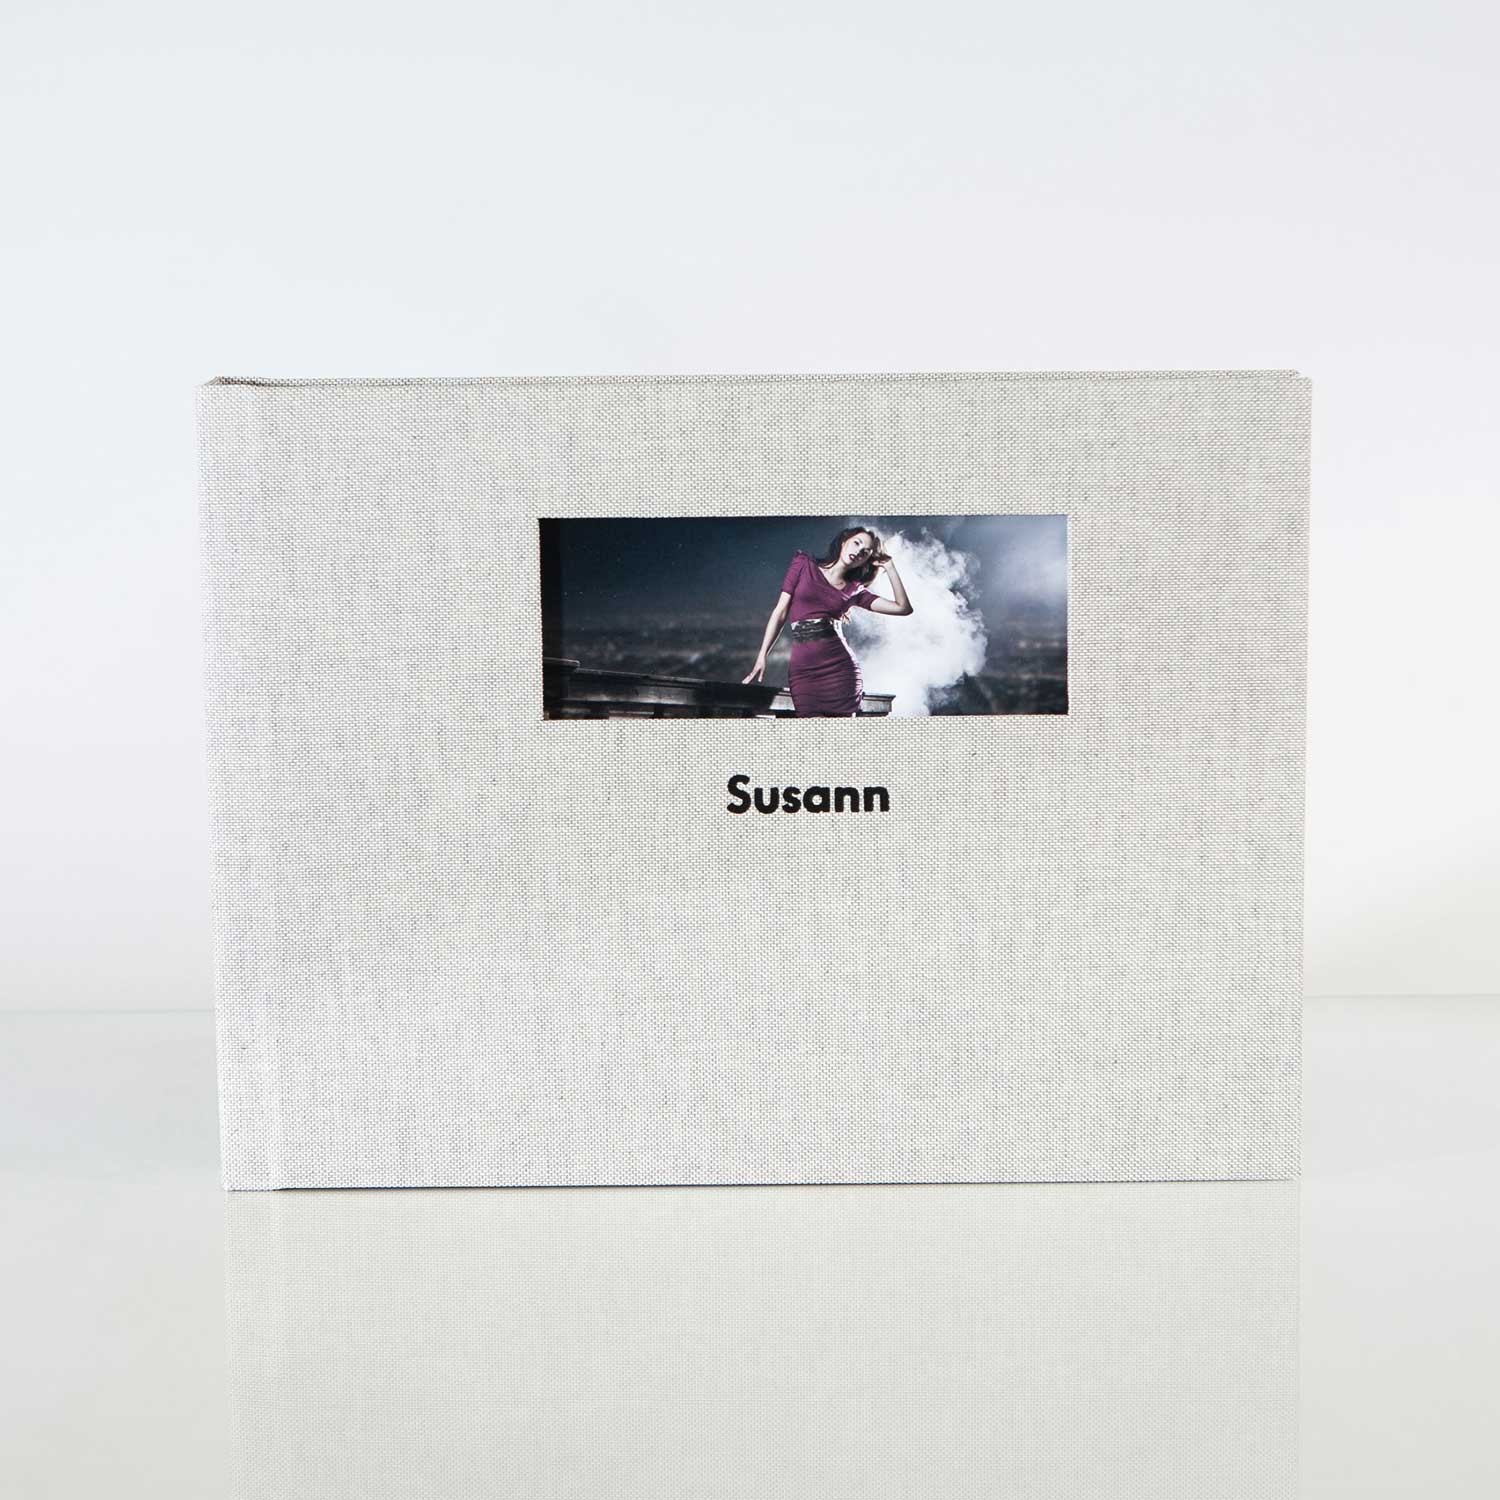 Silverbook 30x20cm Fenêtre au format Paysage